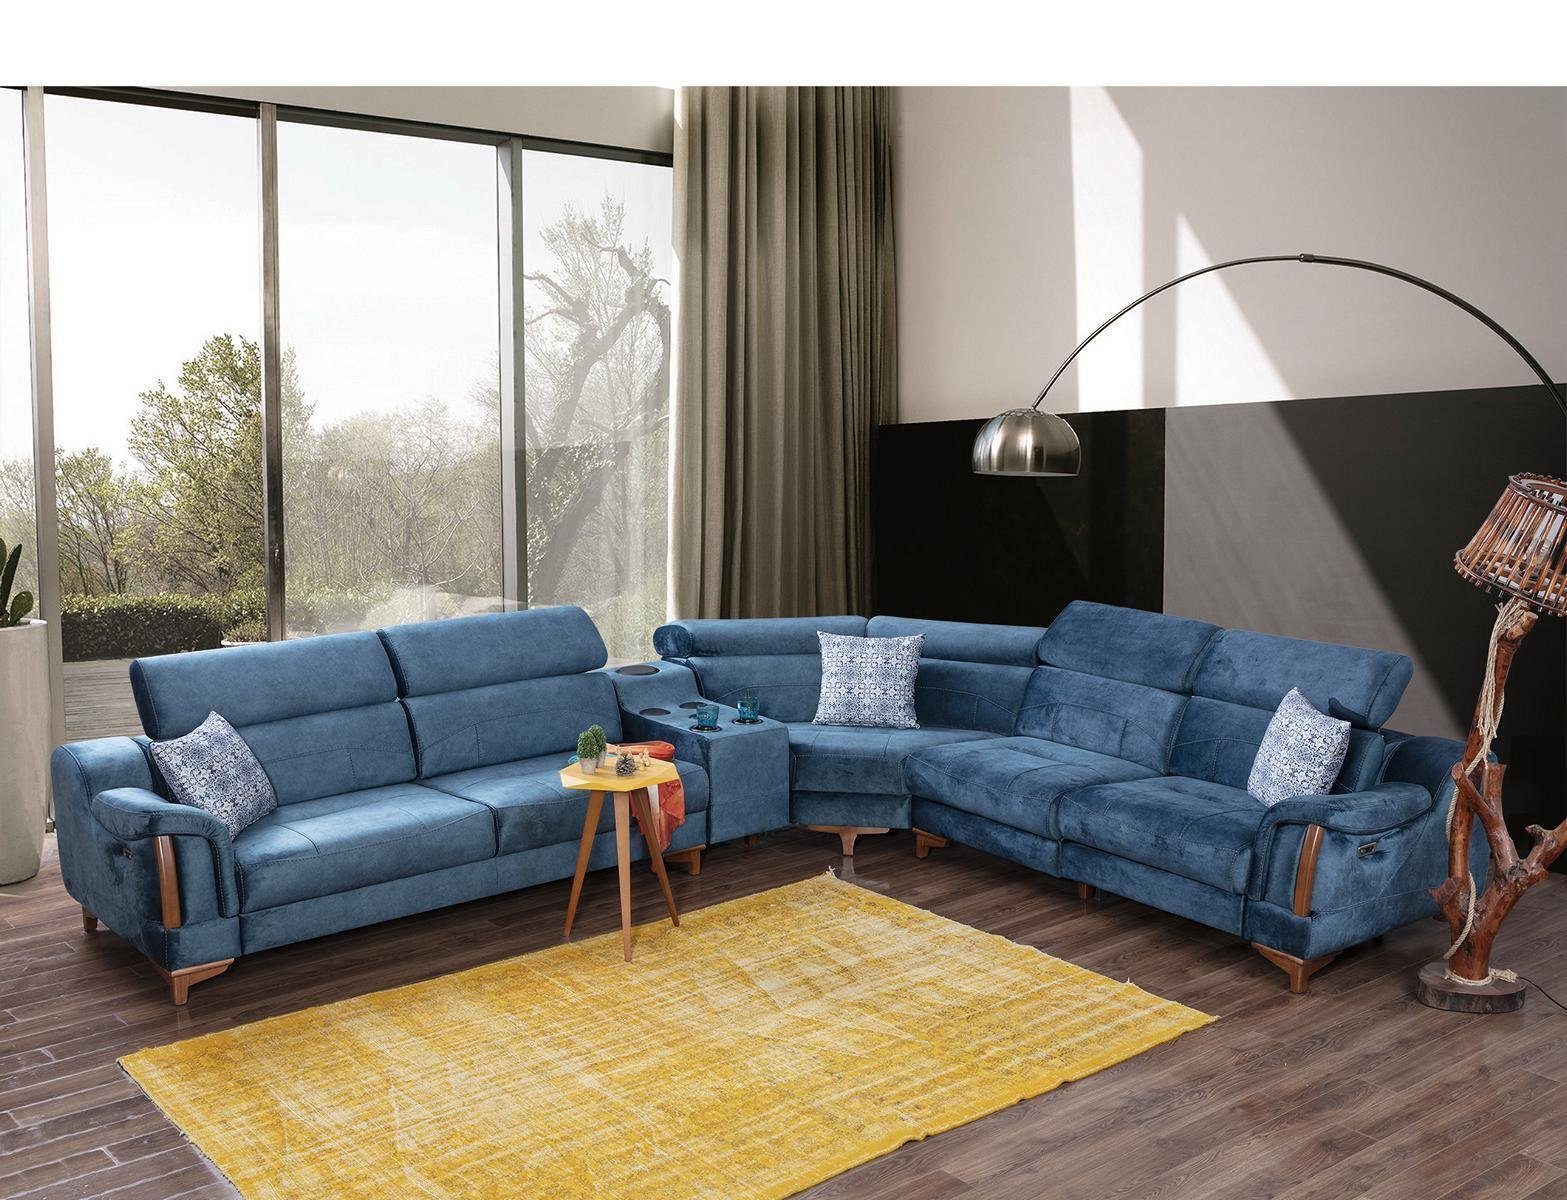 JVmoebel Ecksofa Wohnzimmer Ecksofa L-Form Sofa Couch Modern Design Möbel Textil, 6 Teile, Made in Europa